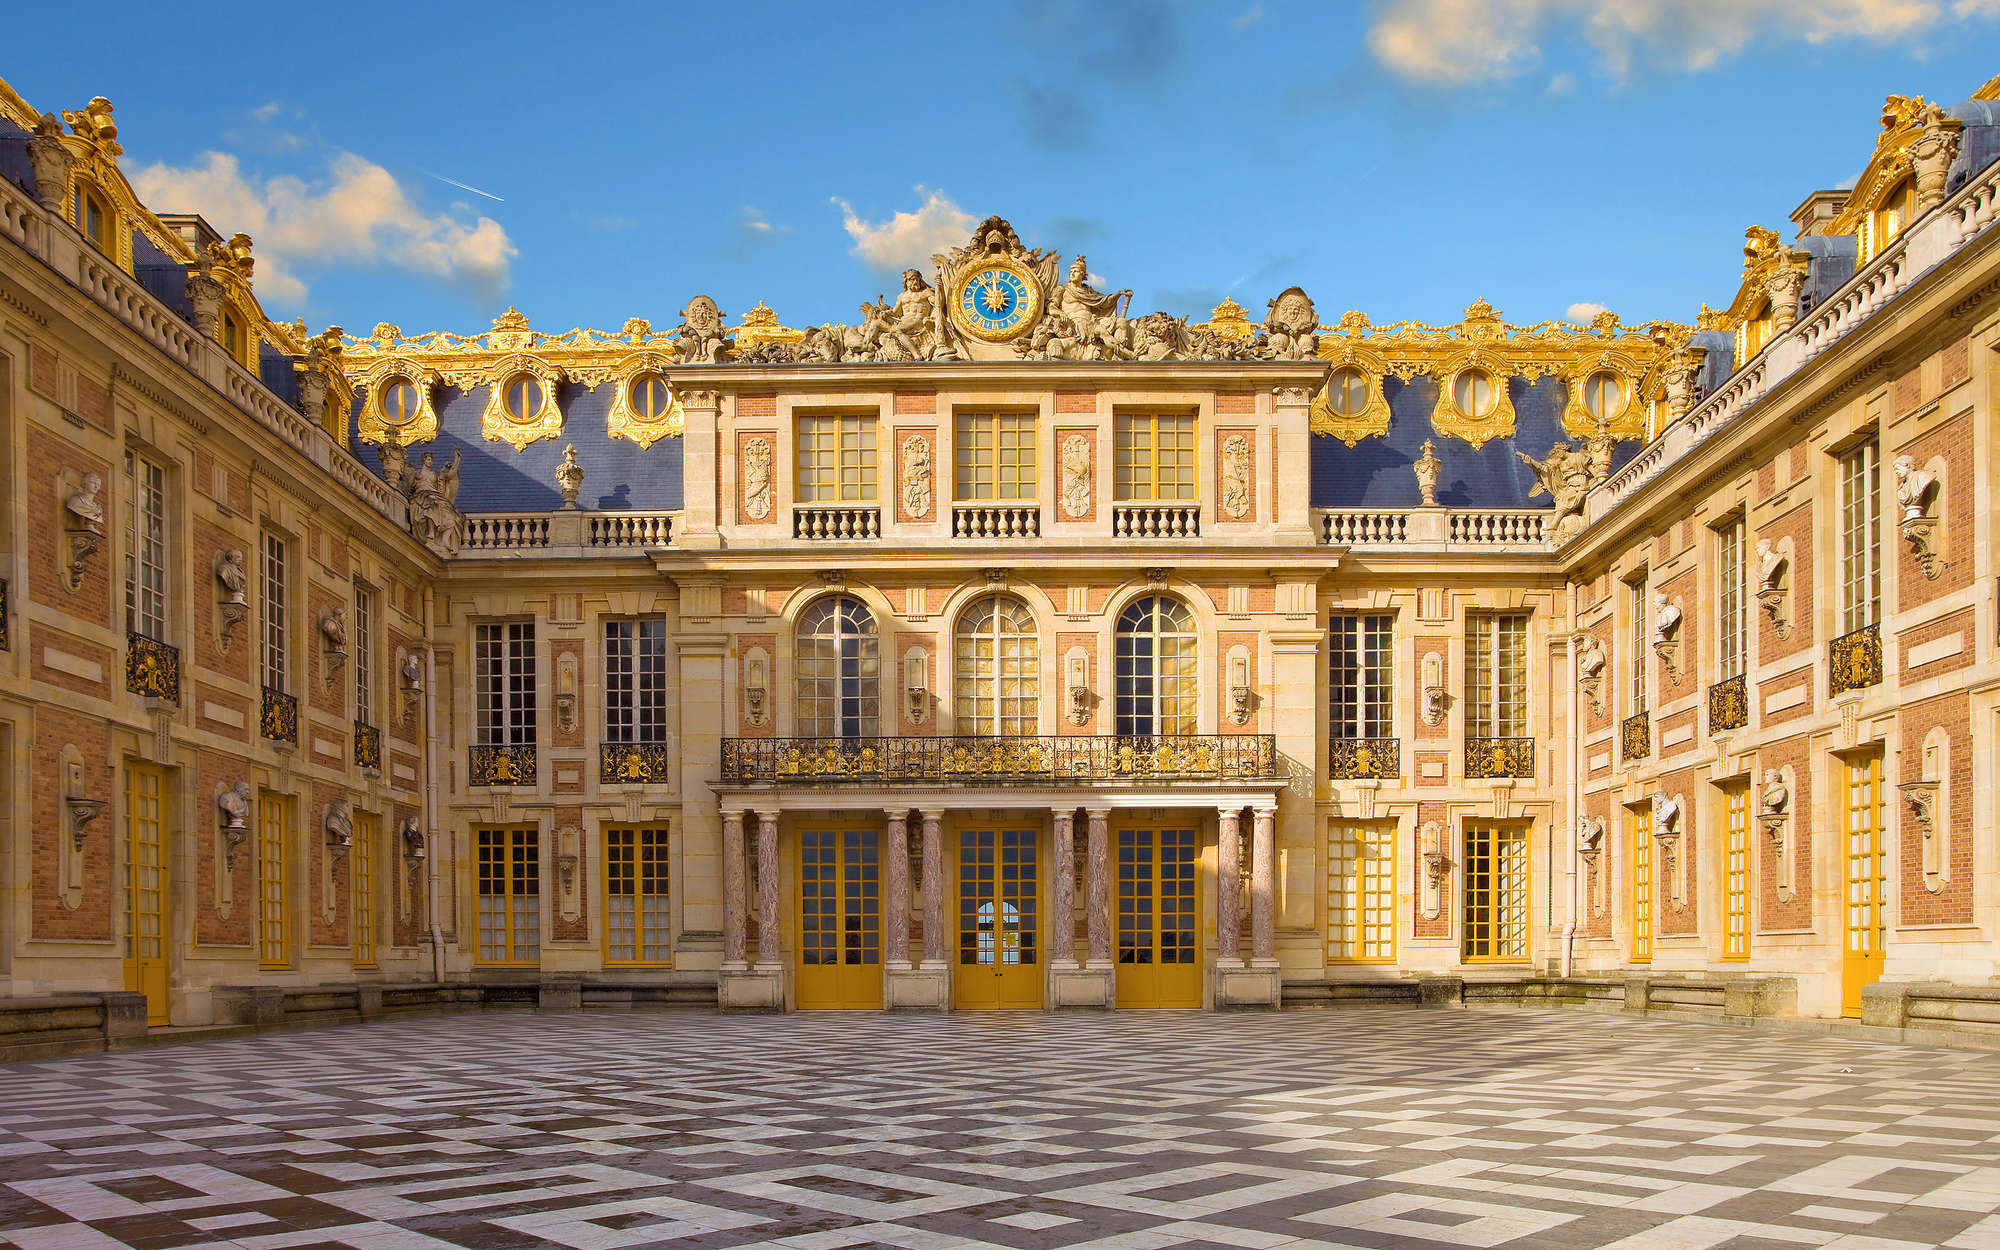             Papel pintable Barroco Palacio de Versalles - Premium Smooth Fleece
        